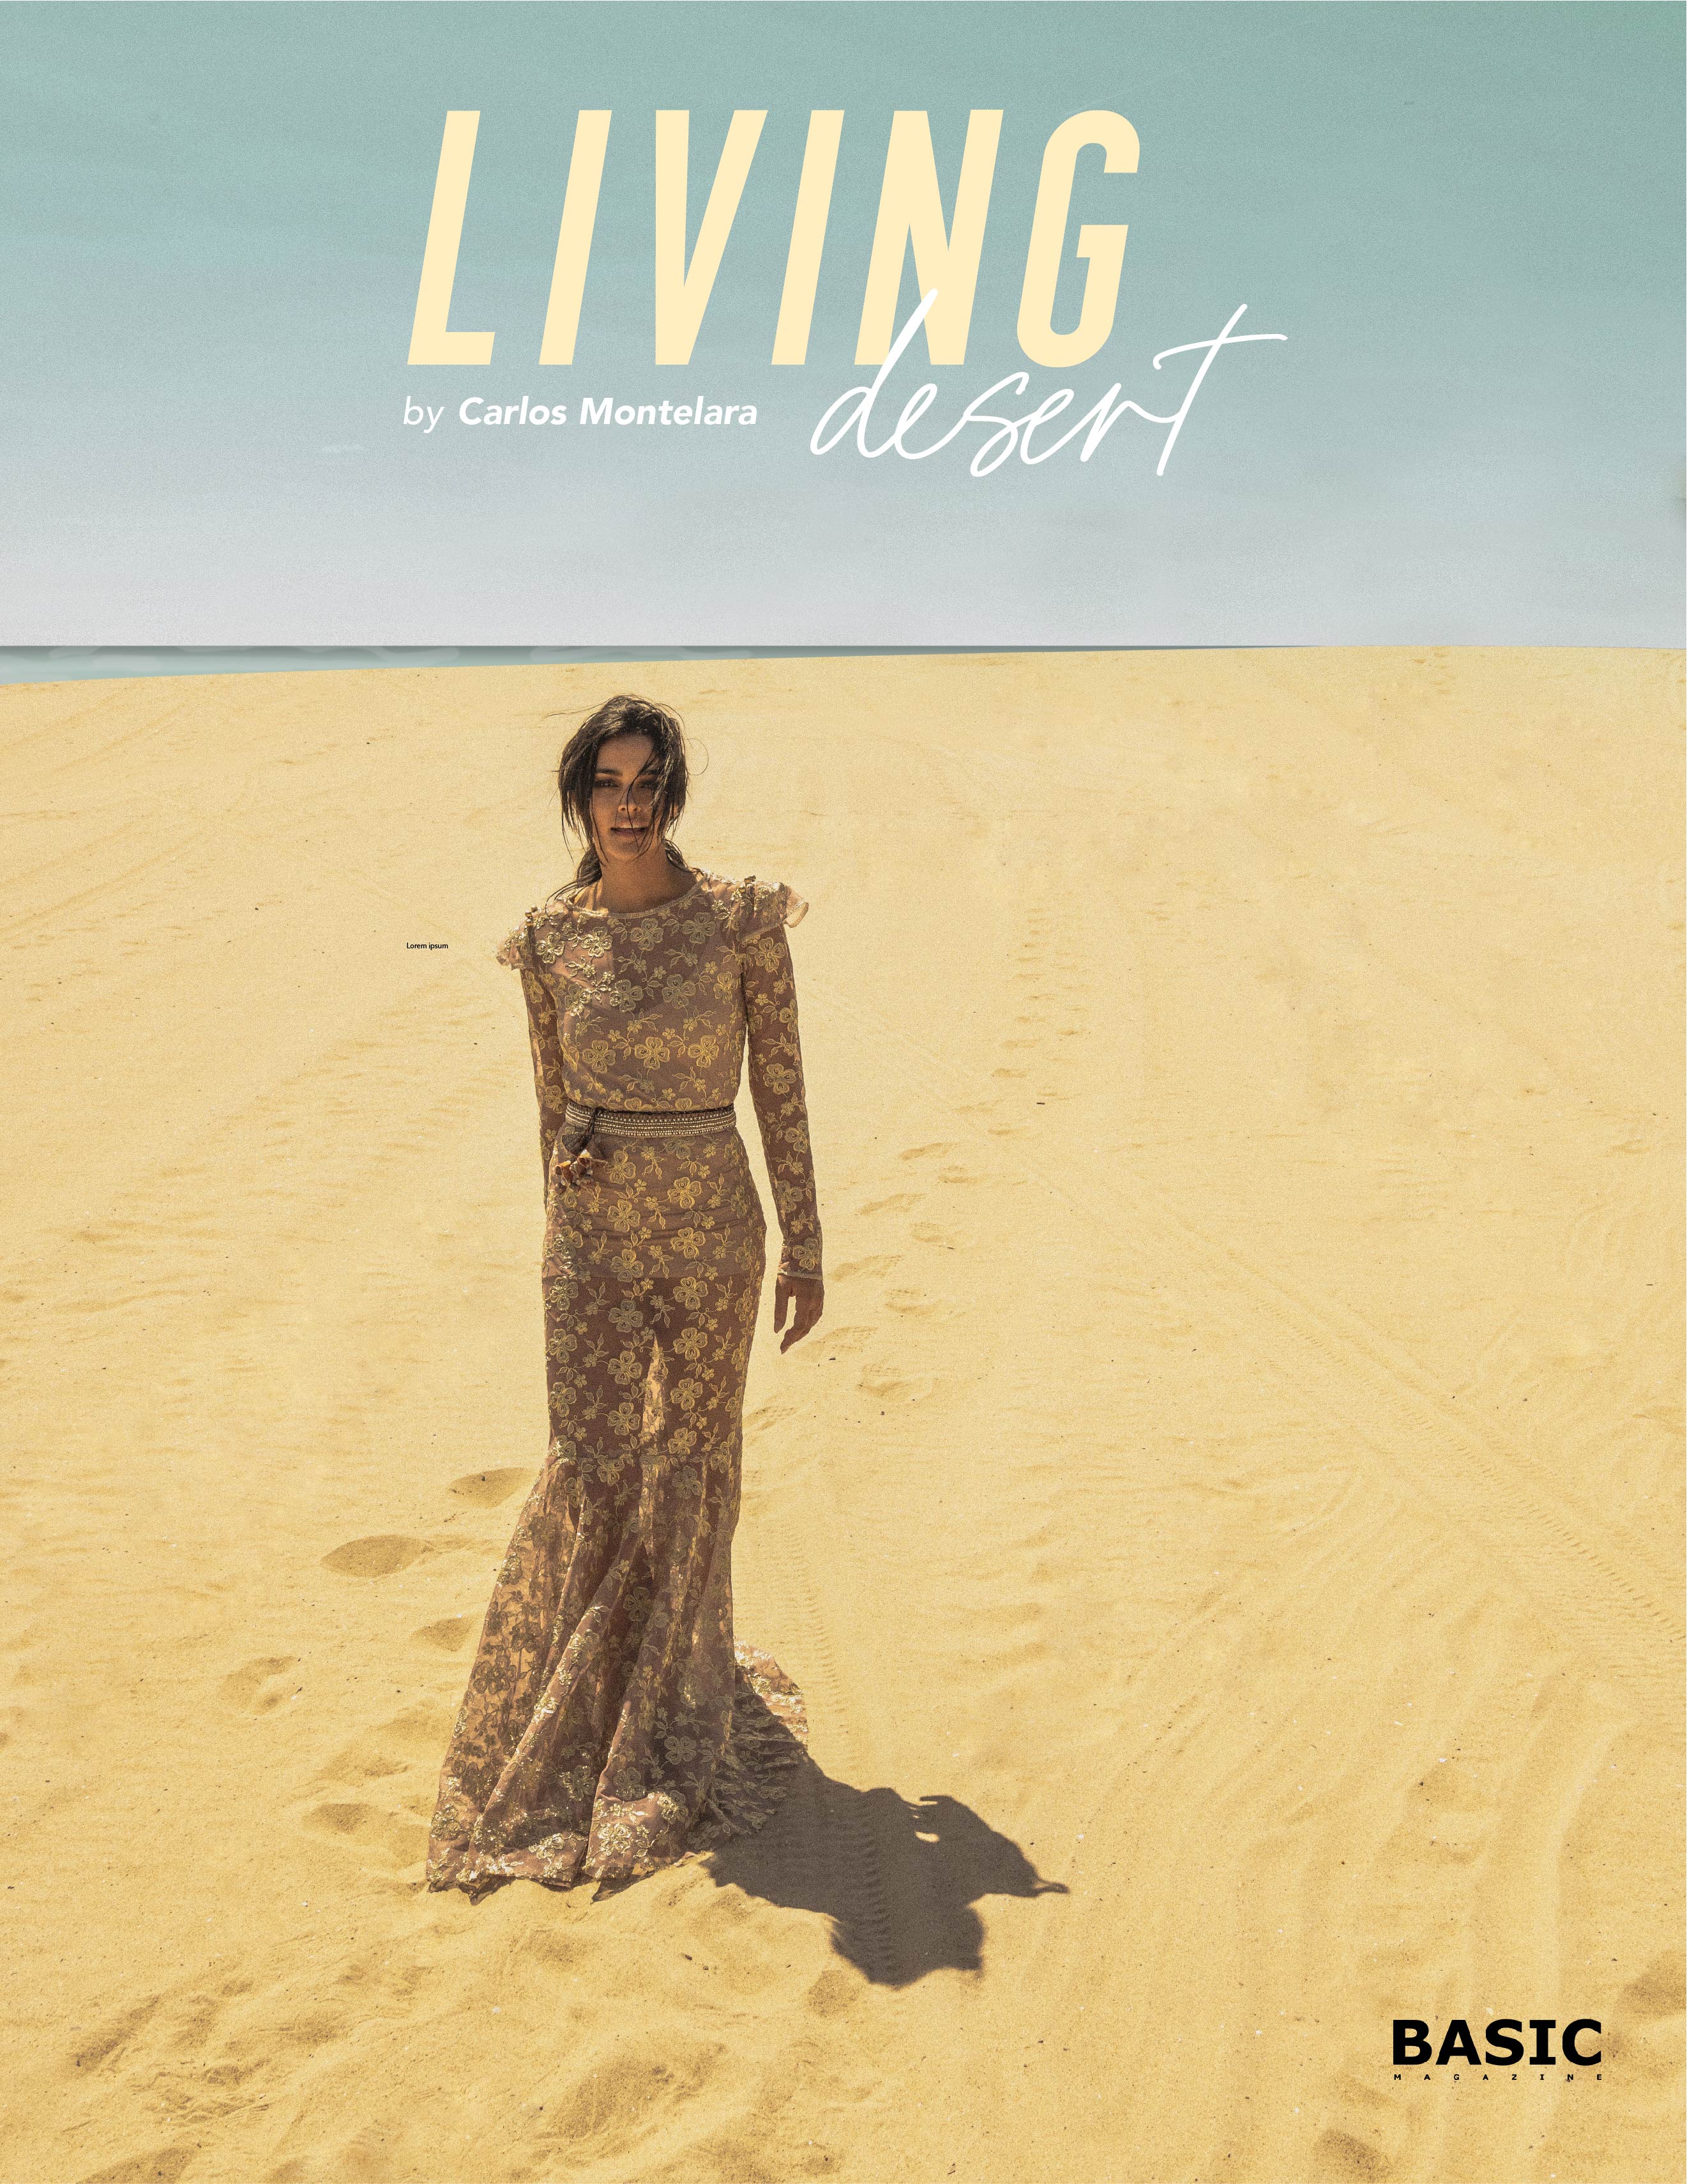 LIVING DESERT